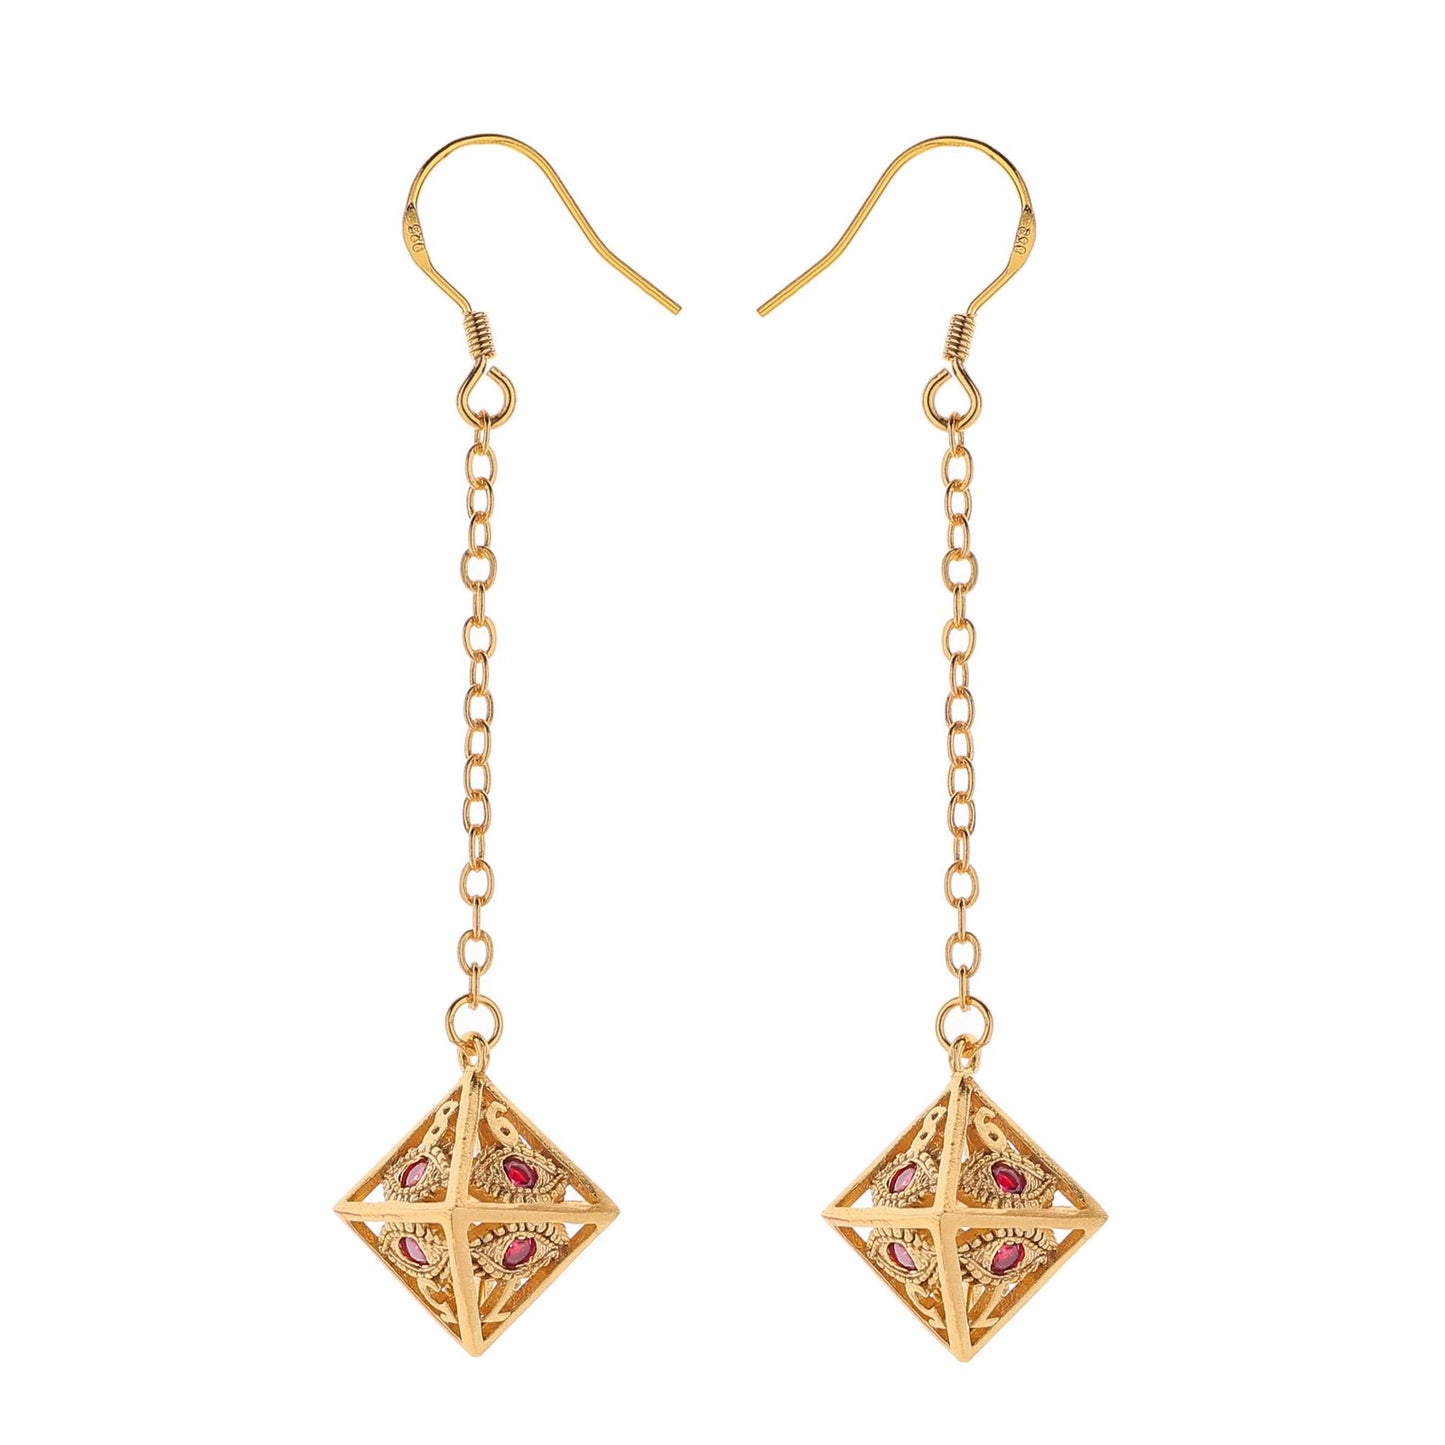 Dragon's eye D8 earrings-Gold w/Red gems